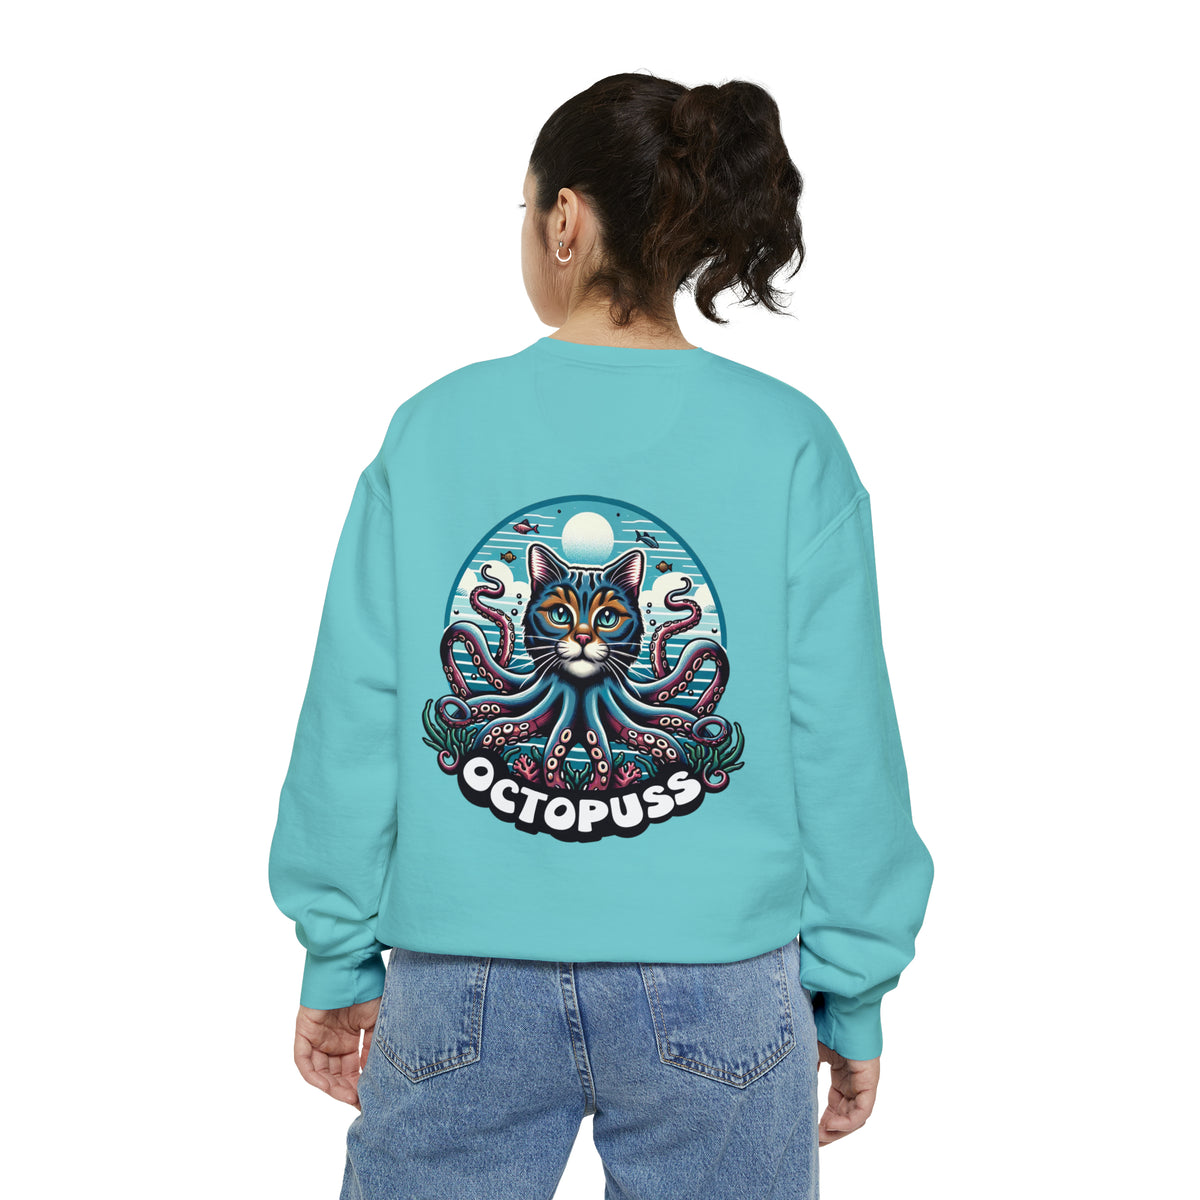 Octopuss Beach Bum Funny Cat Octopus Shirt | Cat Lover Gift | Beach Bum Shirt | Unisex Garment-Dyed Sweatshirt